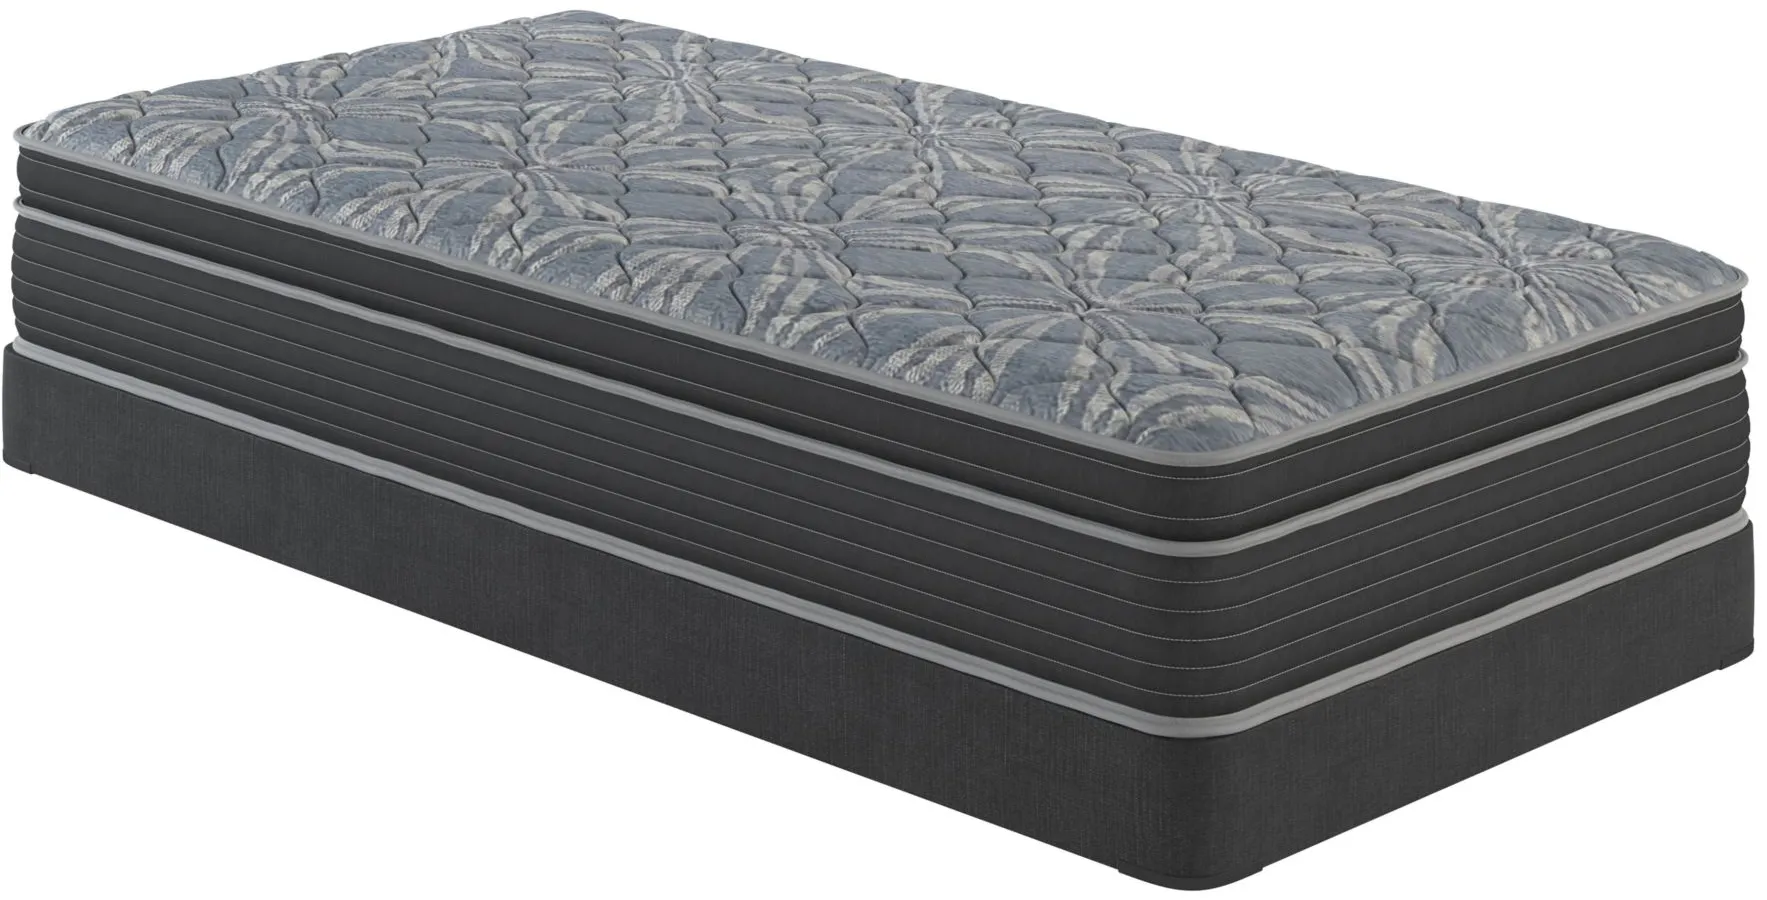 bellanest ivy faux eurotop full mattress